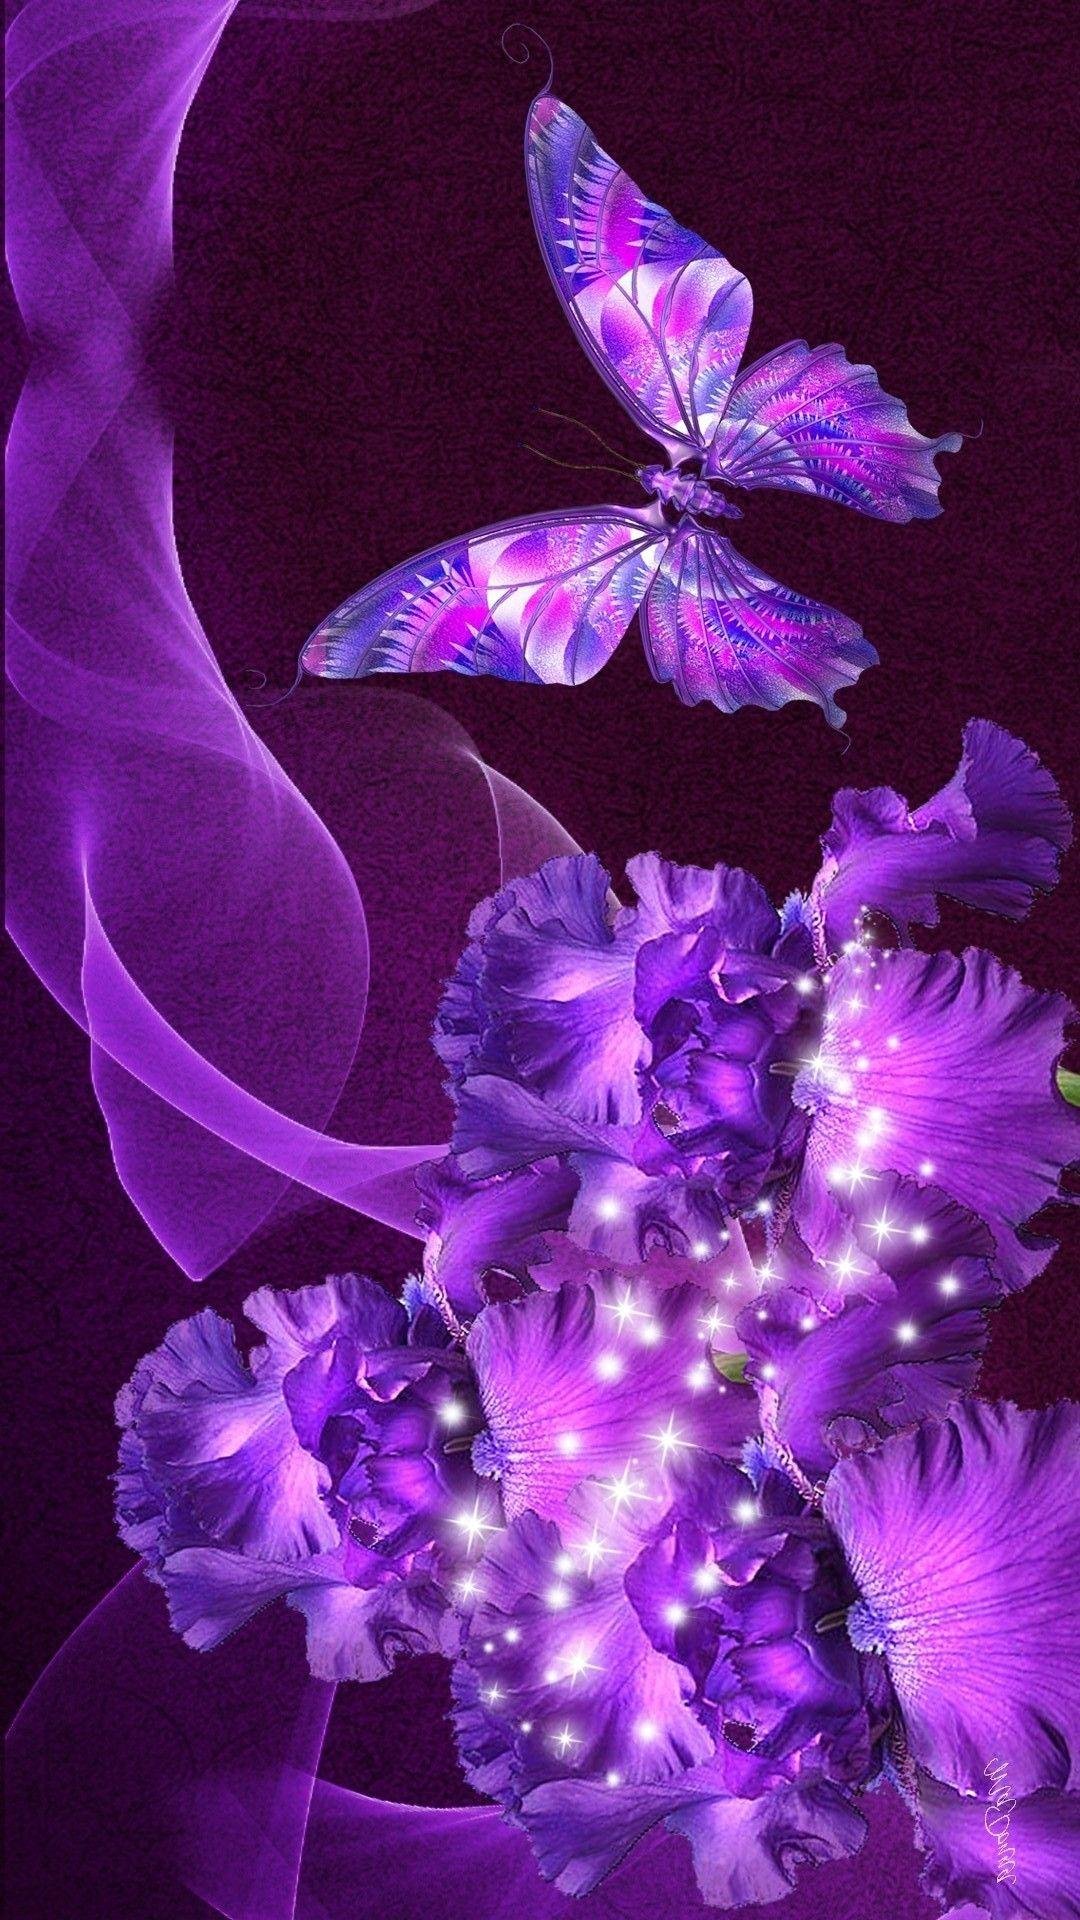 Purple Butterfly Flat Design on Purple Background Stock Illustration   Illustration of butterfly child 158301725